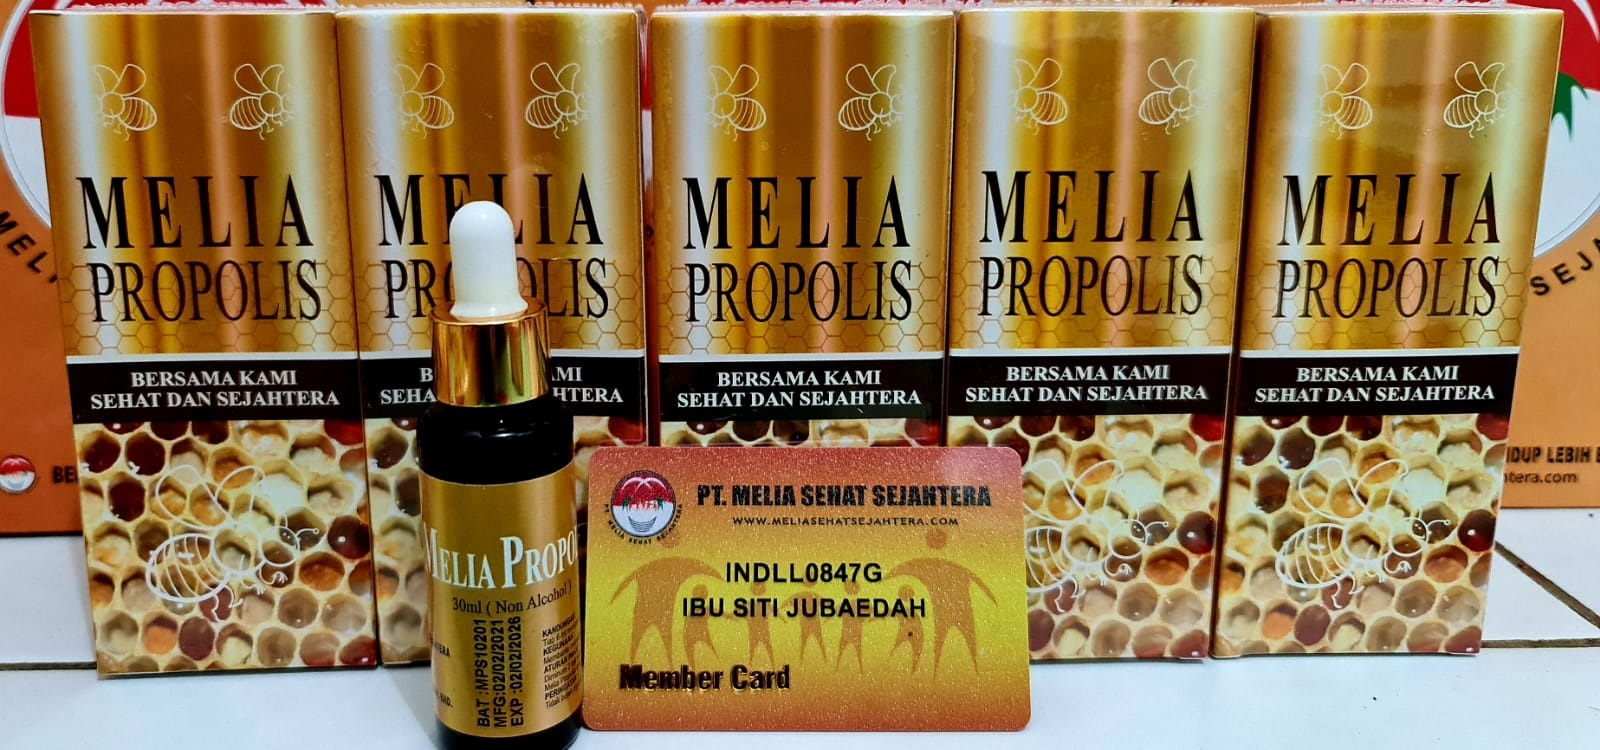 1 Paket Melia Propolis 30ml isi 5 botol